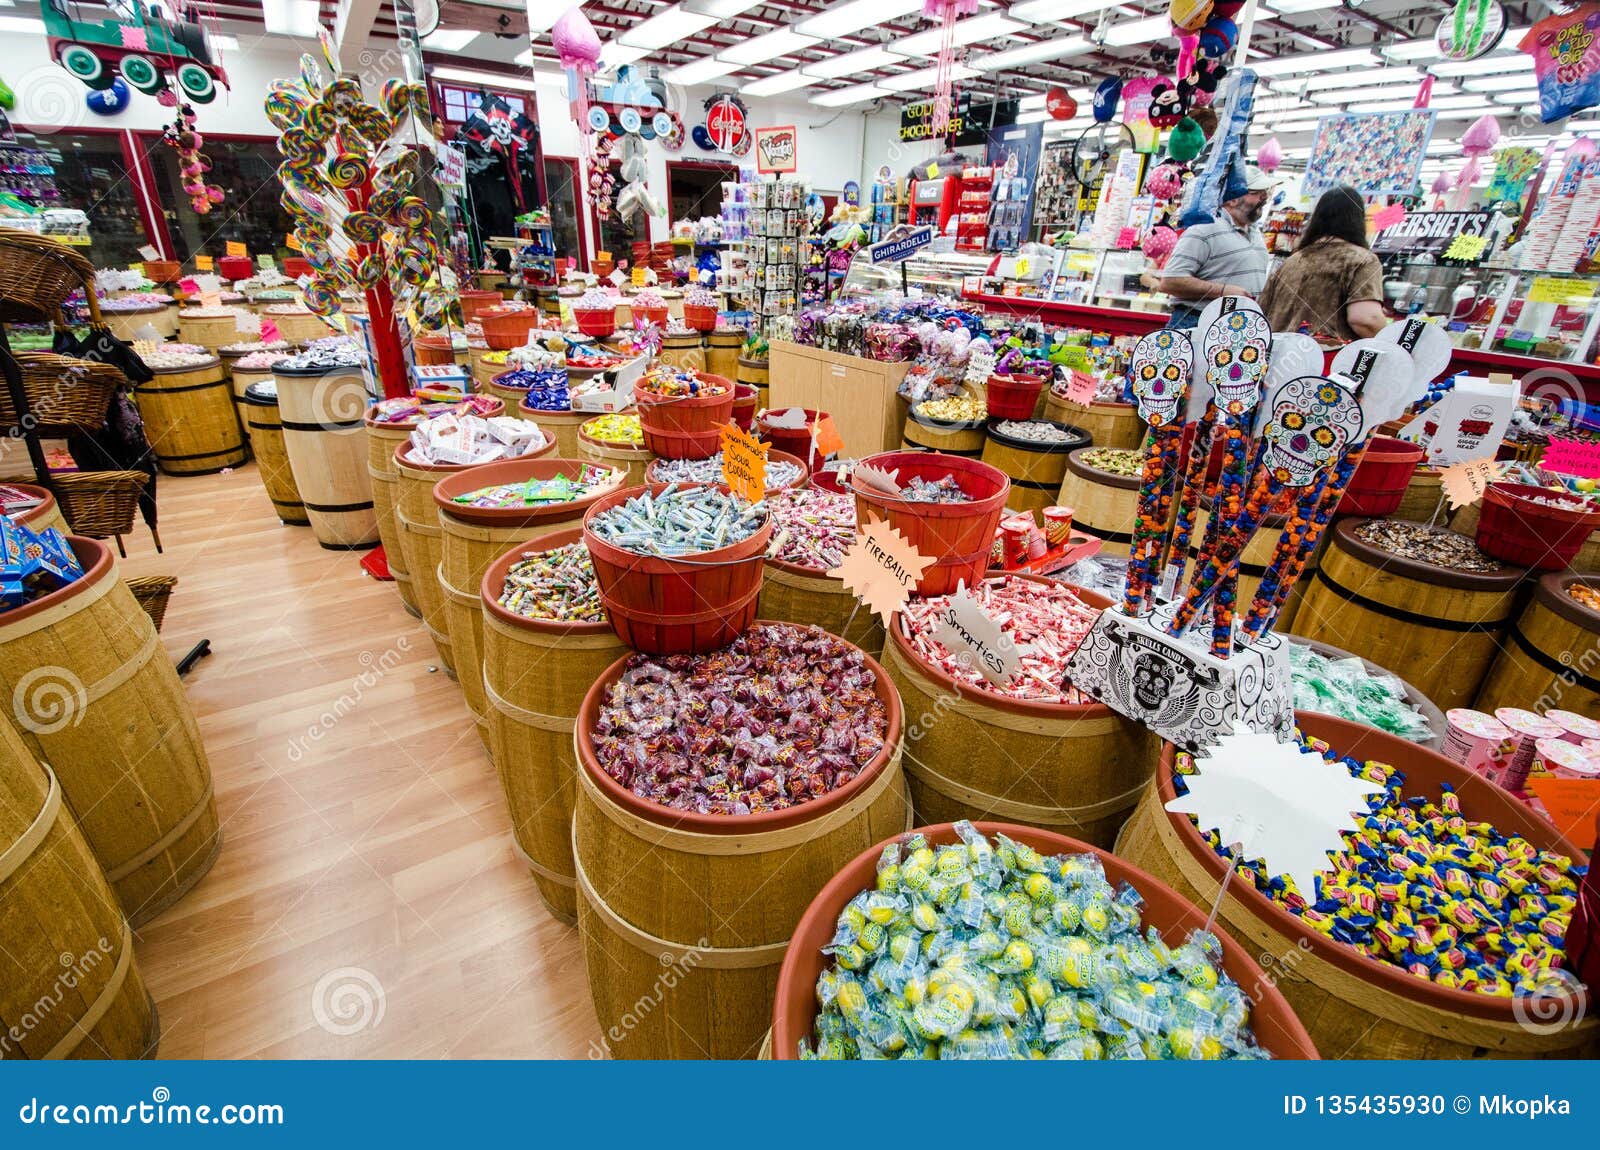 https://thumbs.dreamstime.com/z/monterey-la-californie-un-magasin-de-bonbon-au-caramel-dans-le-secteur-touristes-fabrique-conserves-roy-vend-des-bonbons-chaque-135435930.jpg